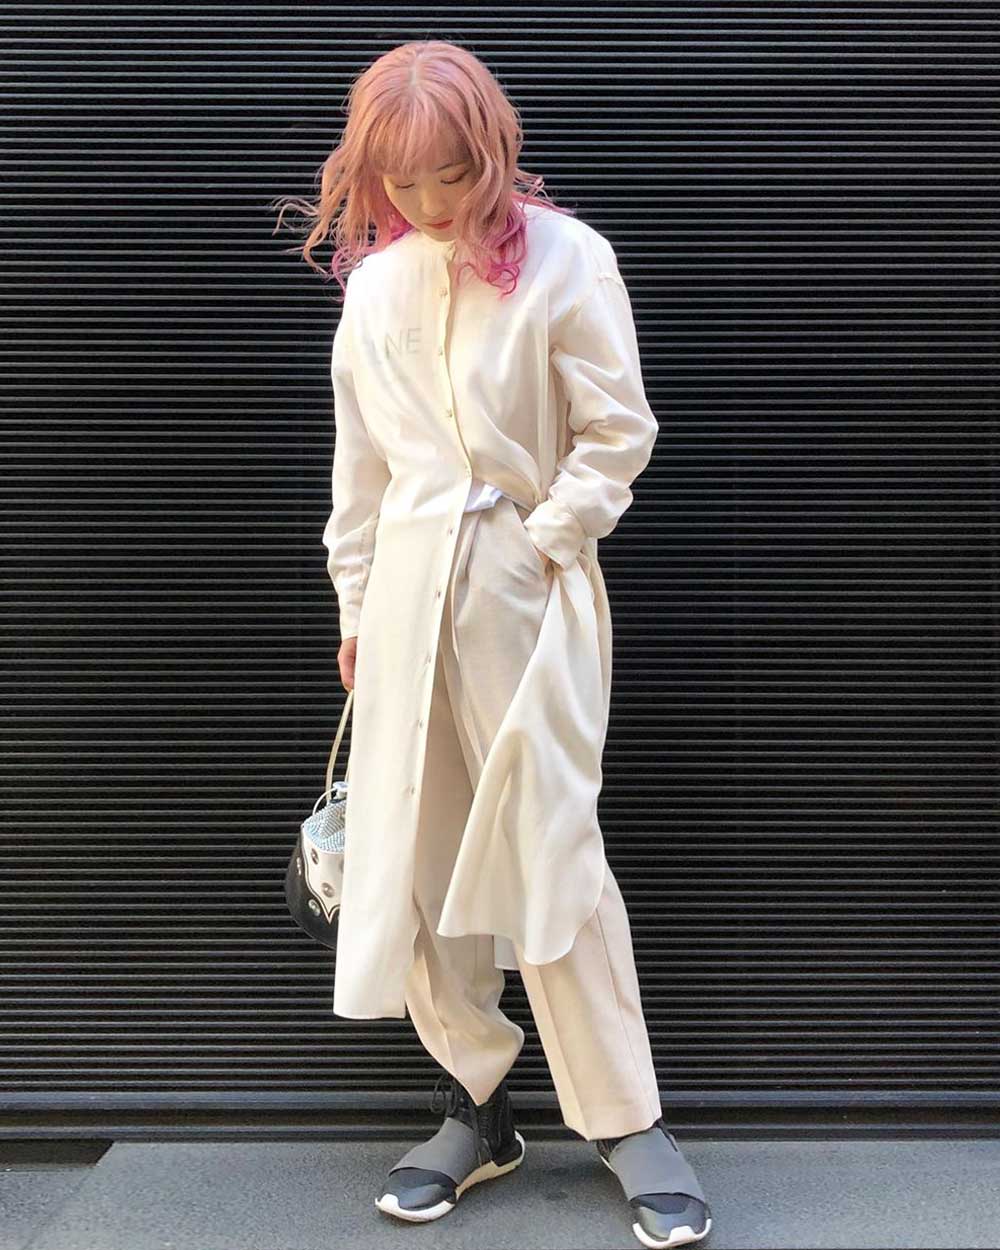 White on white Japanese fashion